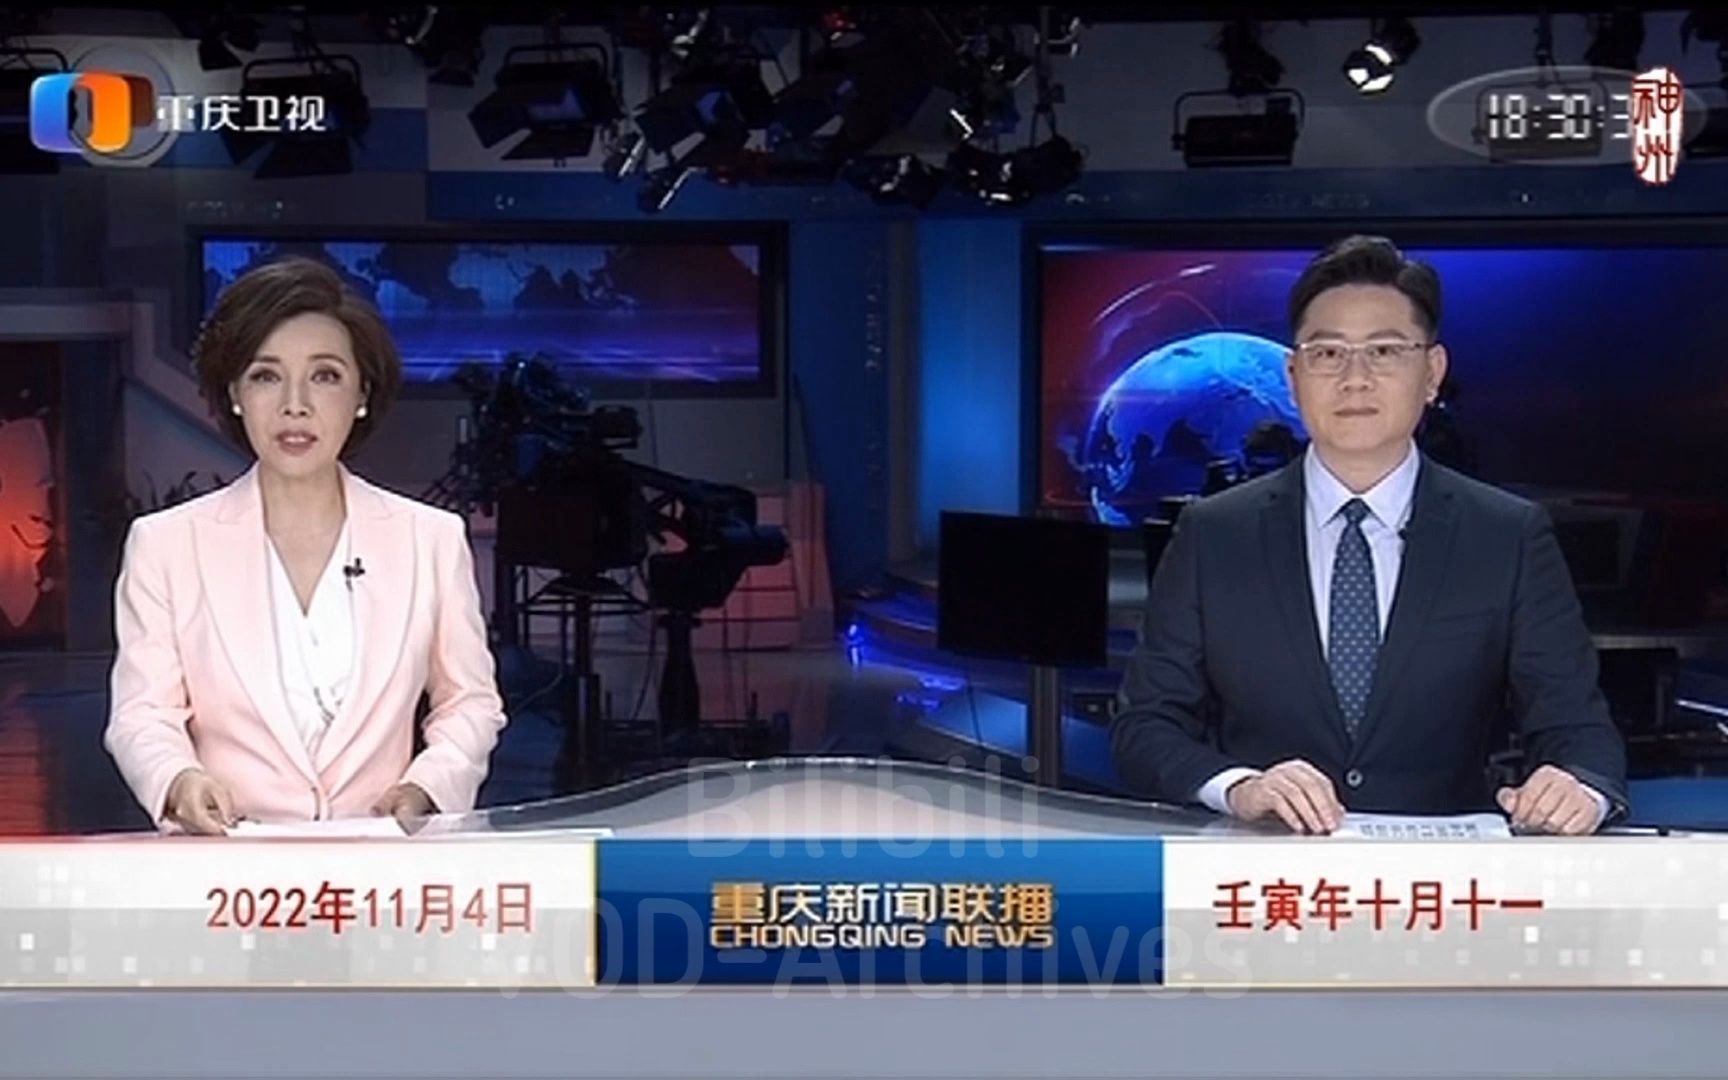 重庆新闻手机直播频道重庆新闻频道直播在线观看